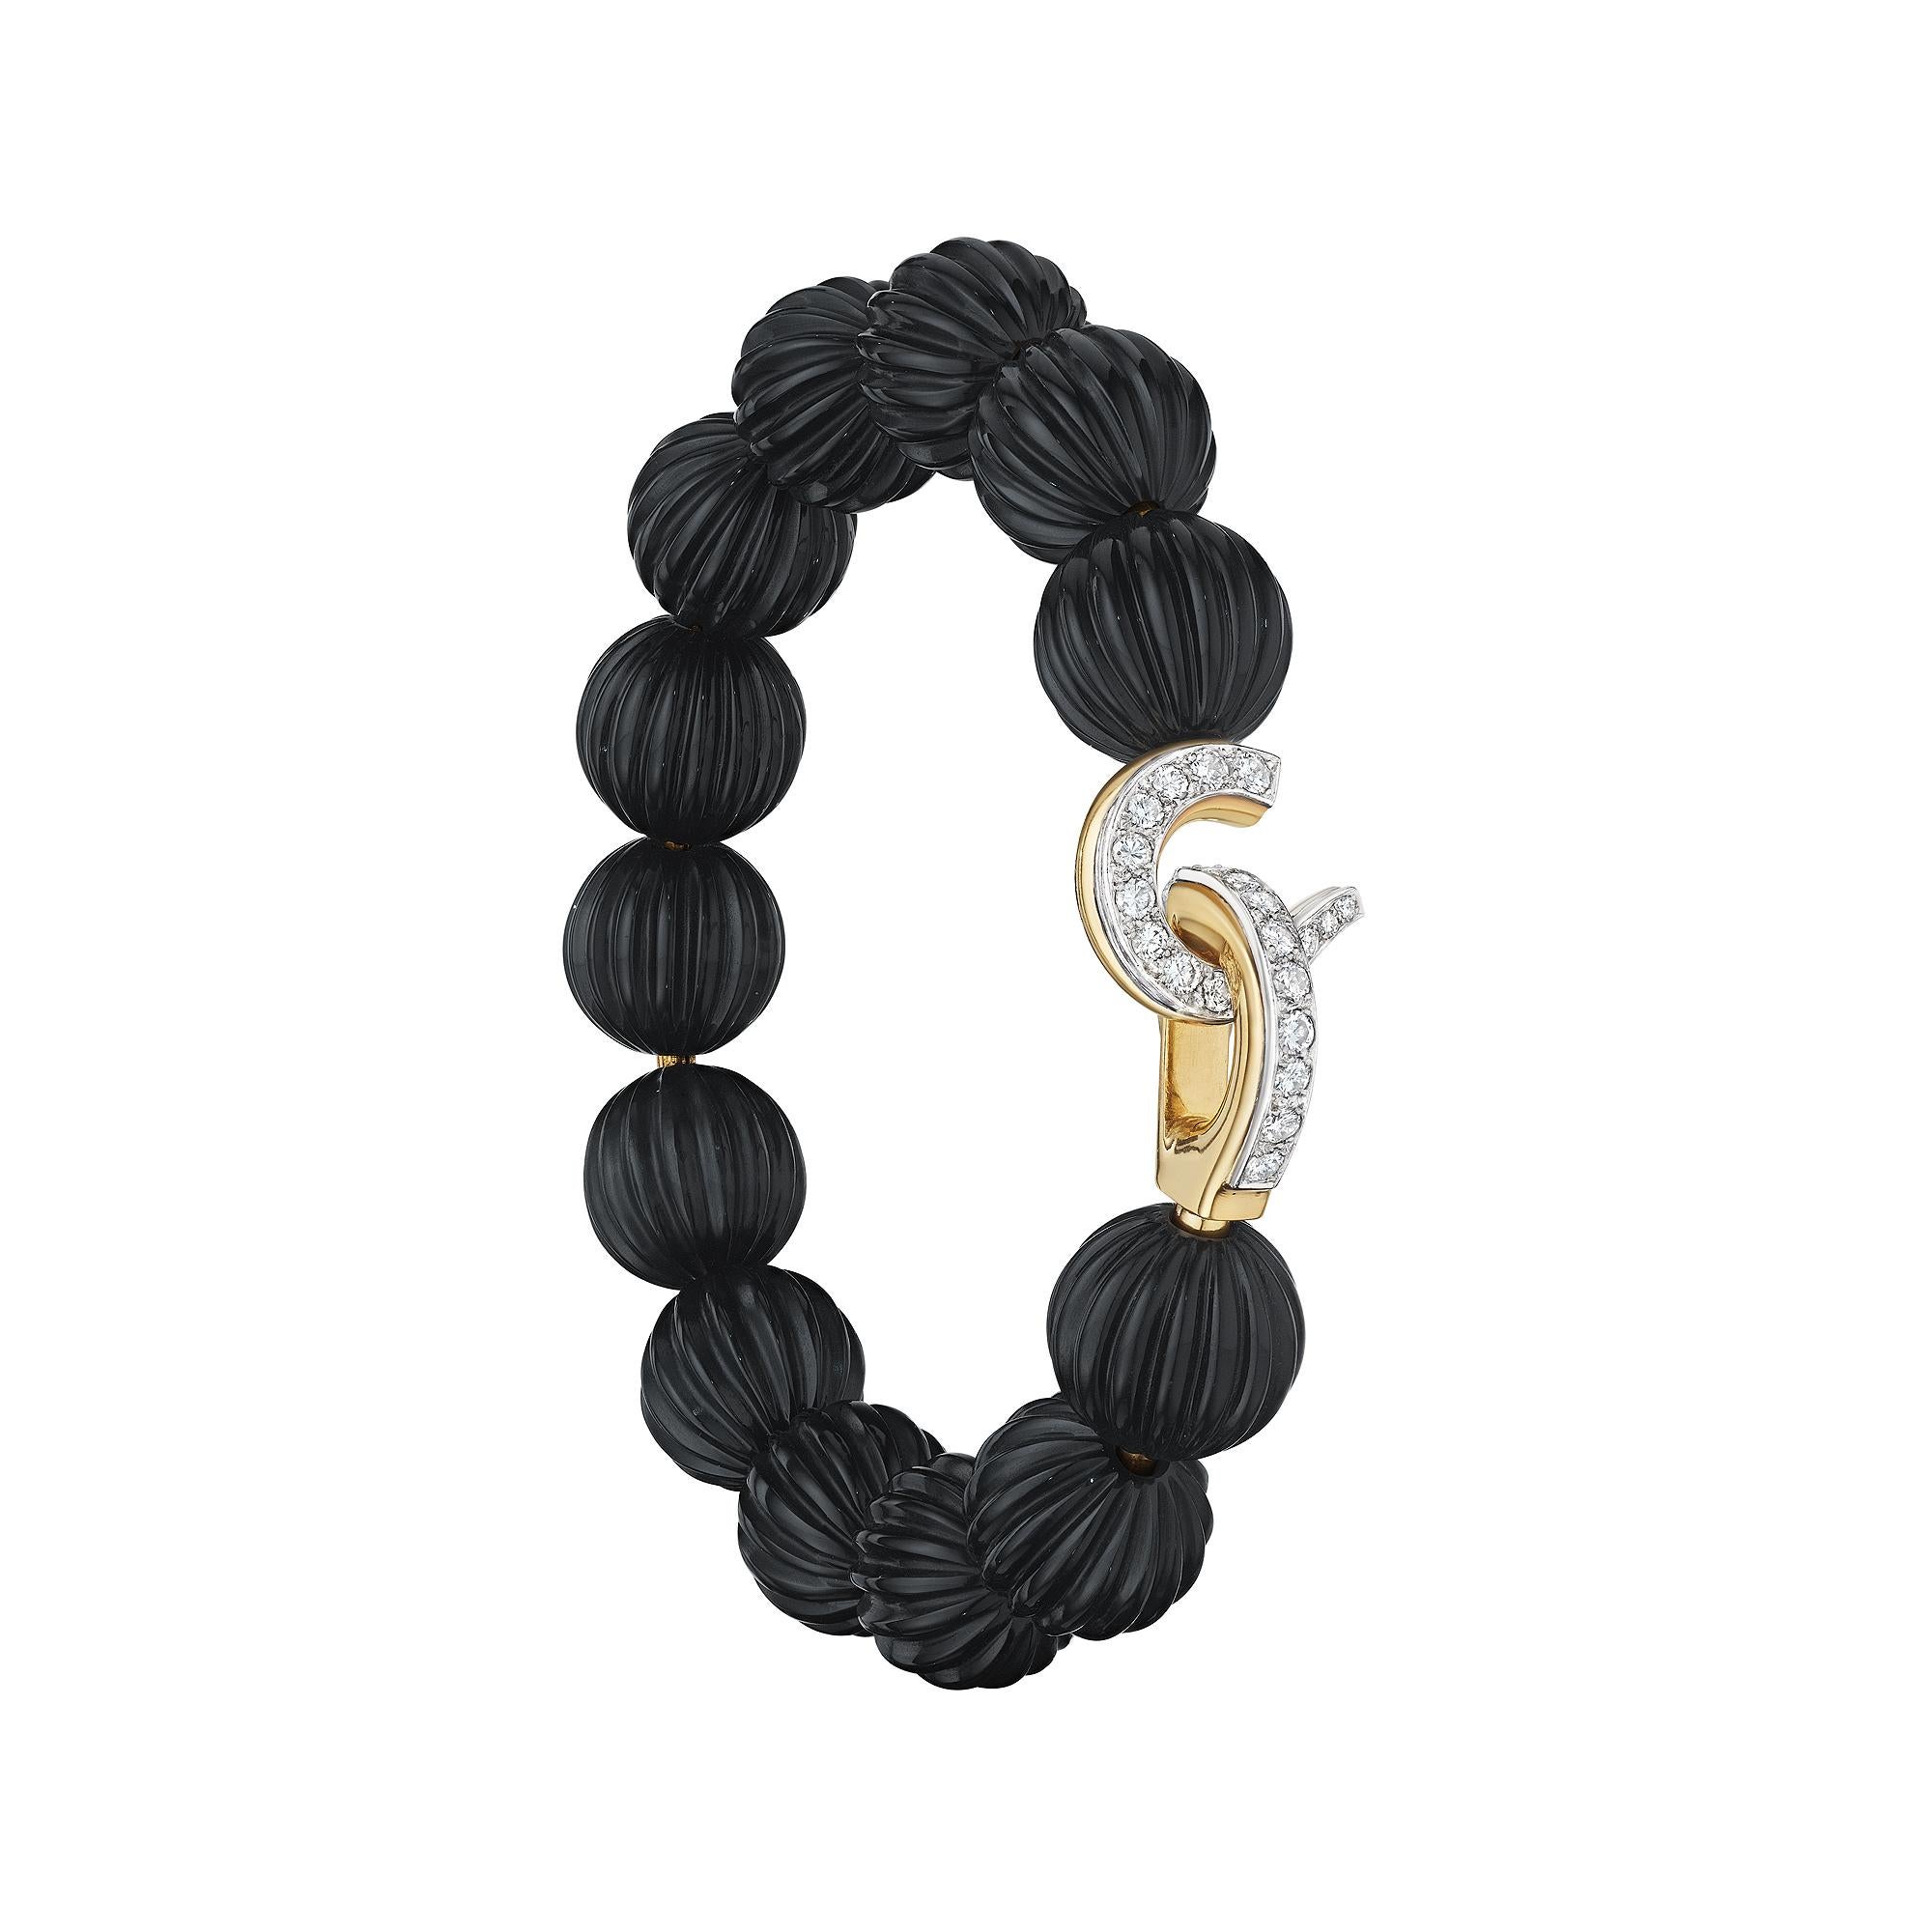 Elegant tanzen diese 13 melonenförmigen Perlen aus schwarzem Onyx um das Handgelenk und bilden ein fesselndes Armband aus Cartier Paris Vintage-Diamanten und 18 Karat Gelbgold, dem man nur schwer widerstehen kann und das ein Sammlerstück ist.  Der